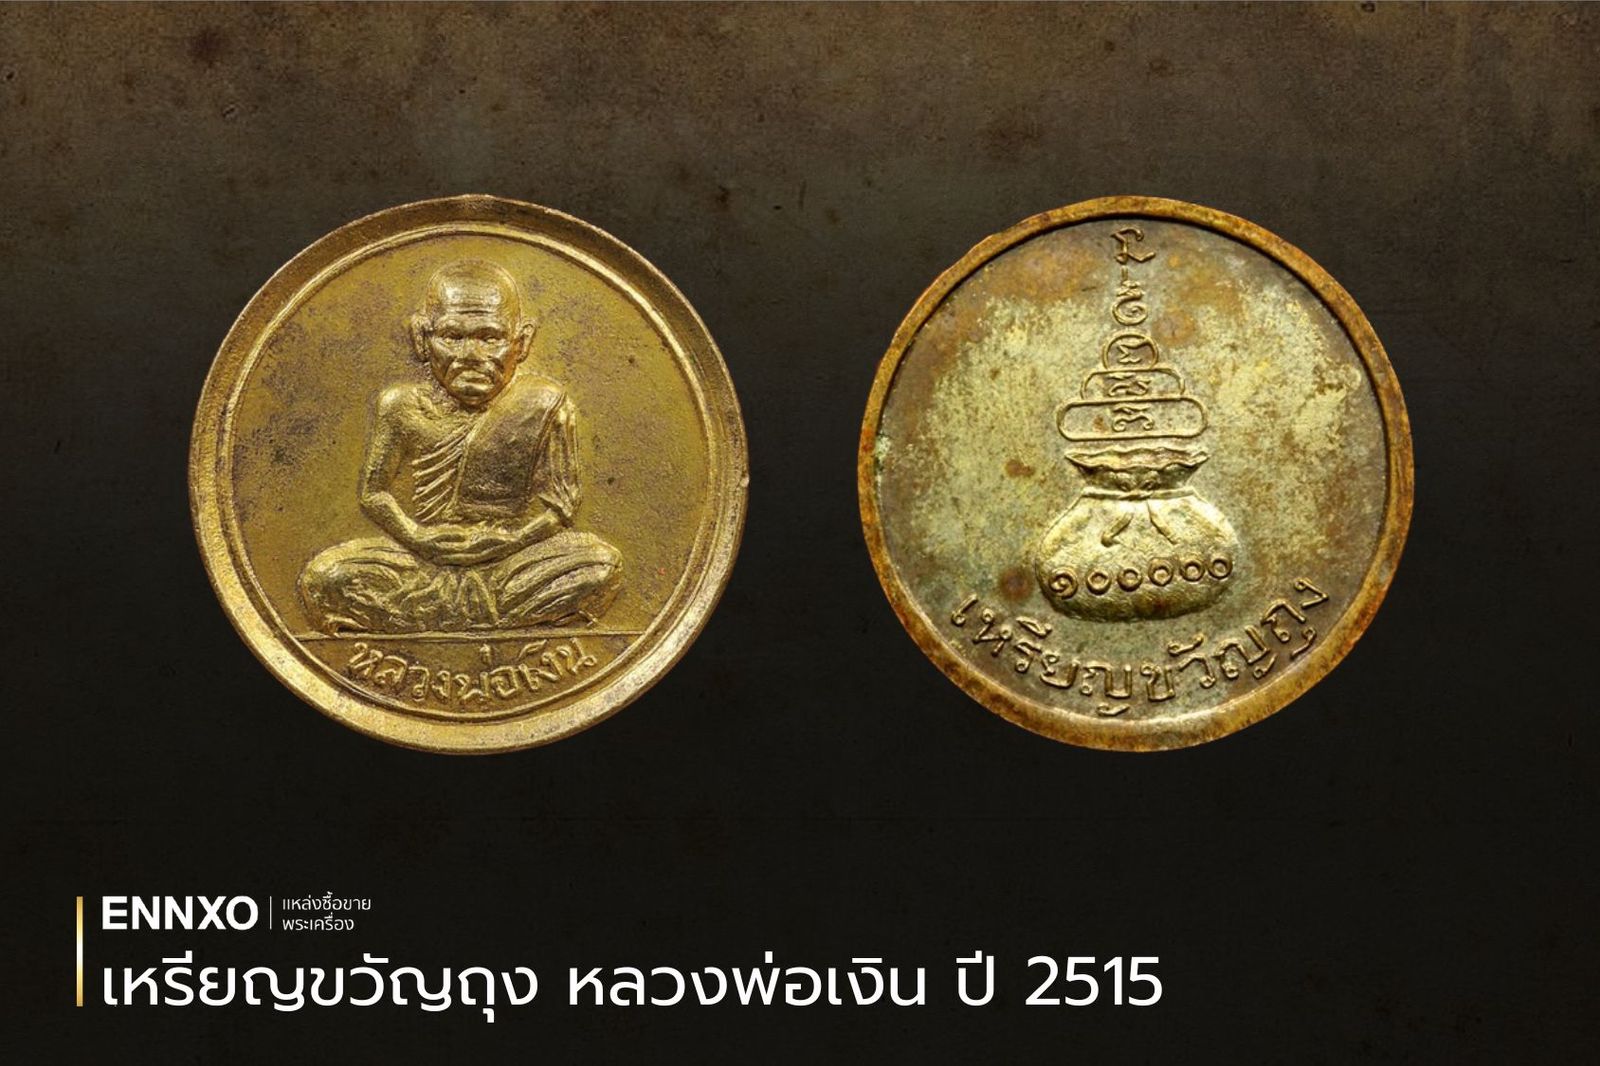 เหรียญขวัญถุง หลวงพ่อเงิน ปี 2515 ราคาเช่าหาแพงหลักแสน